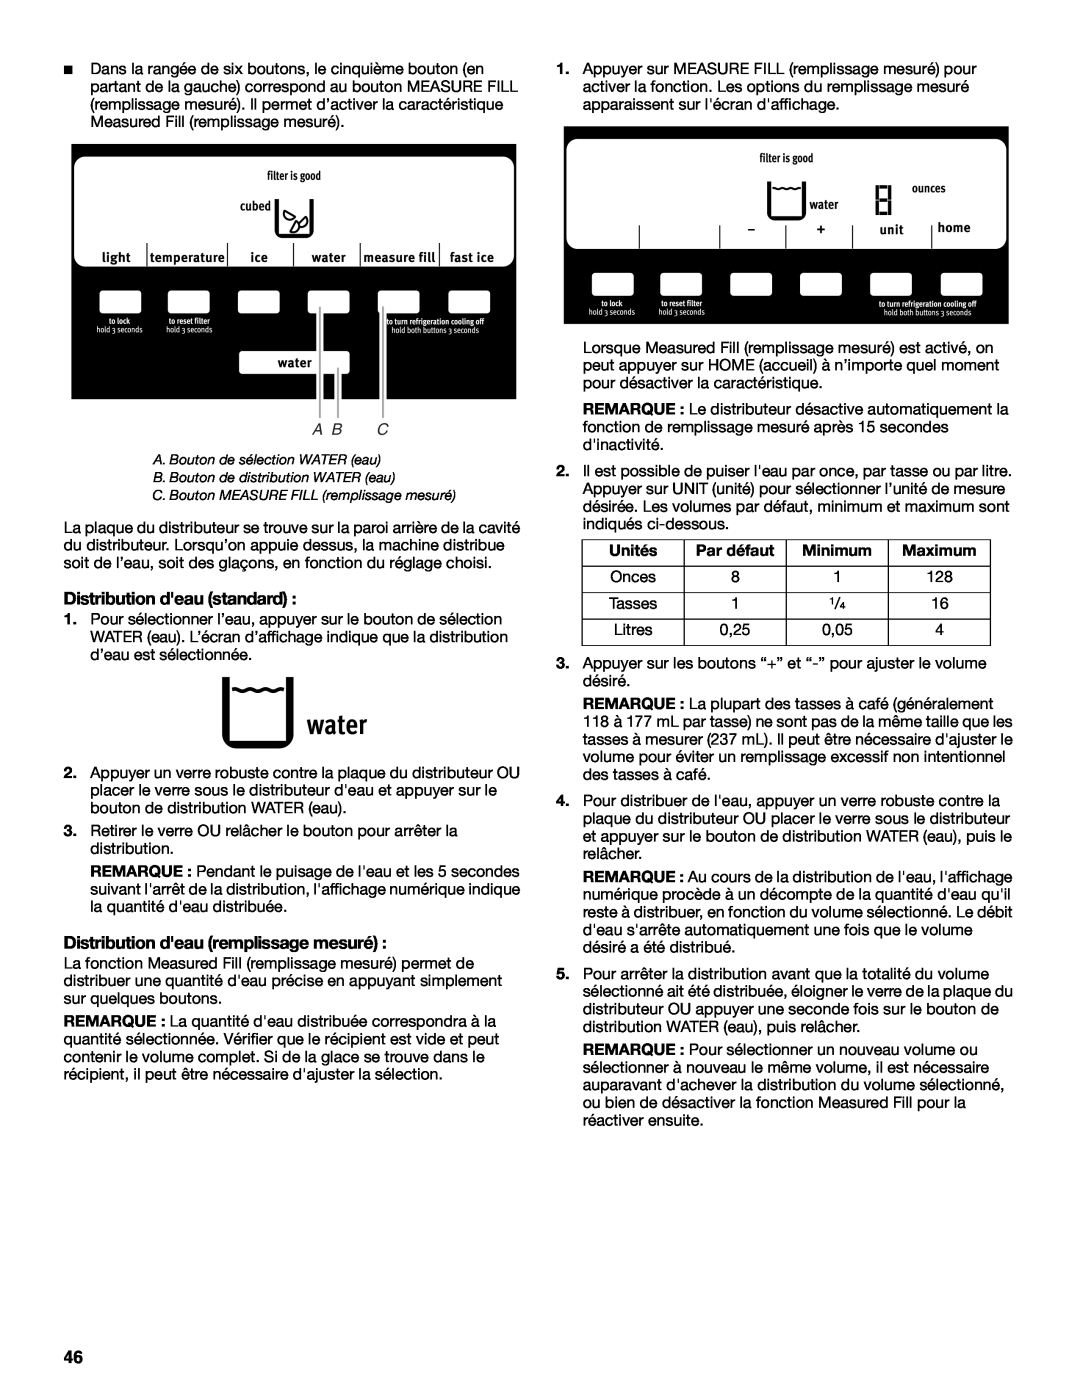 Maytag W10321481A installation instructions Distribution deau standard, Distribution deau remplissage mesuré, A B C 